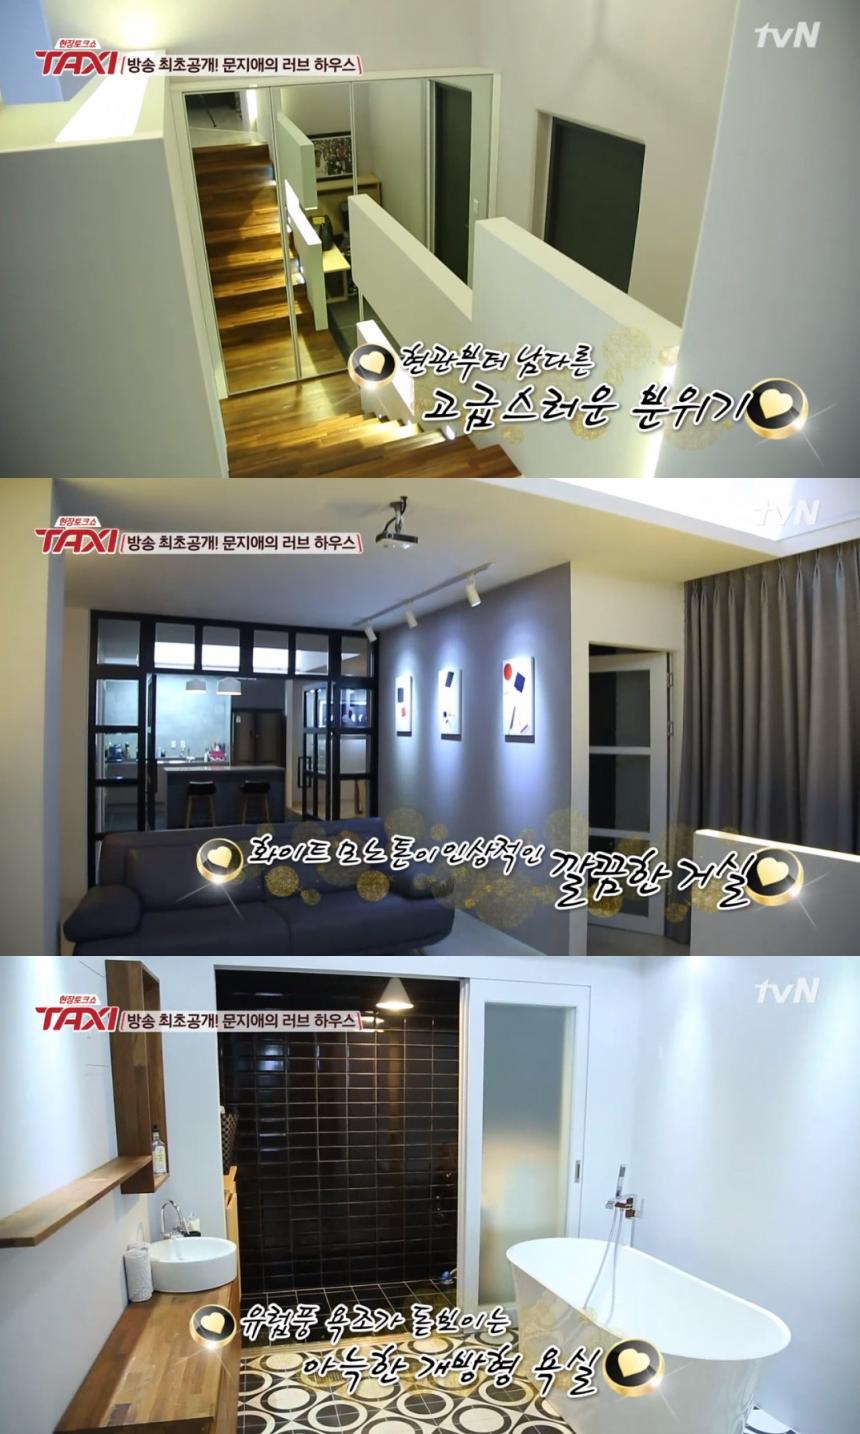 tvN ‘현장 토크쇼 택시’ 방송 캡처